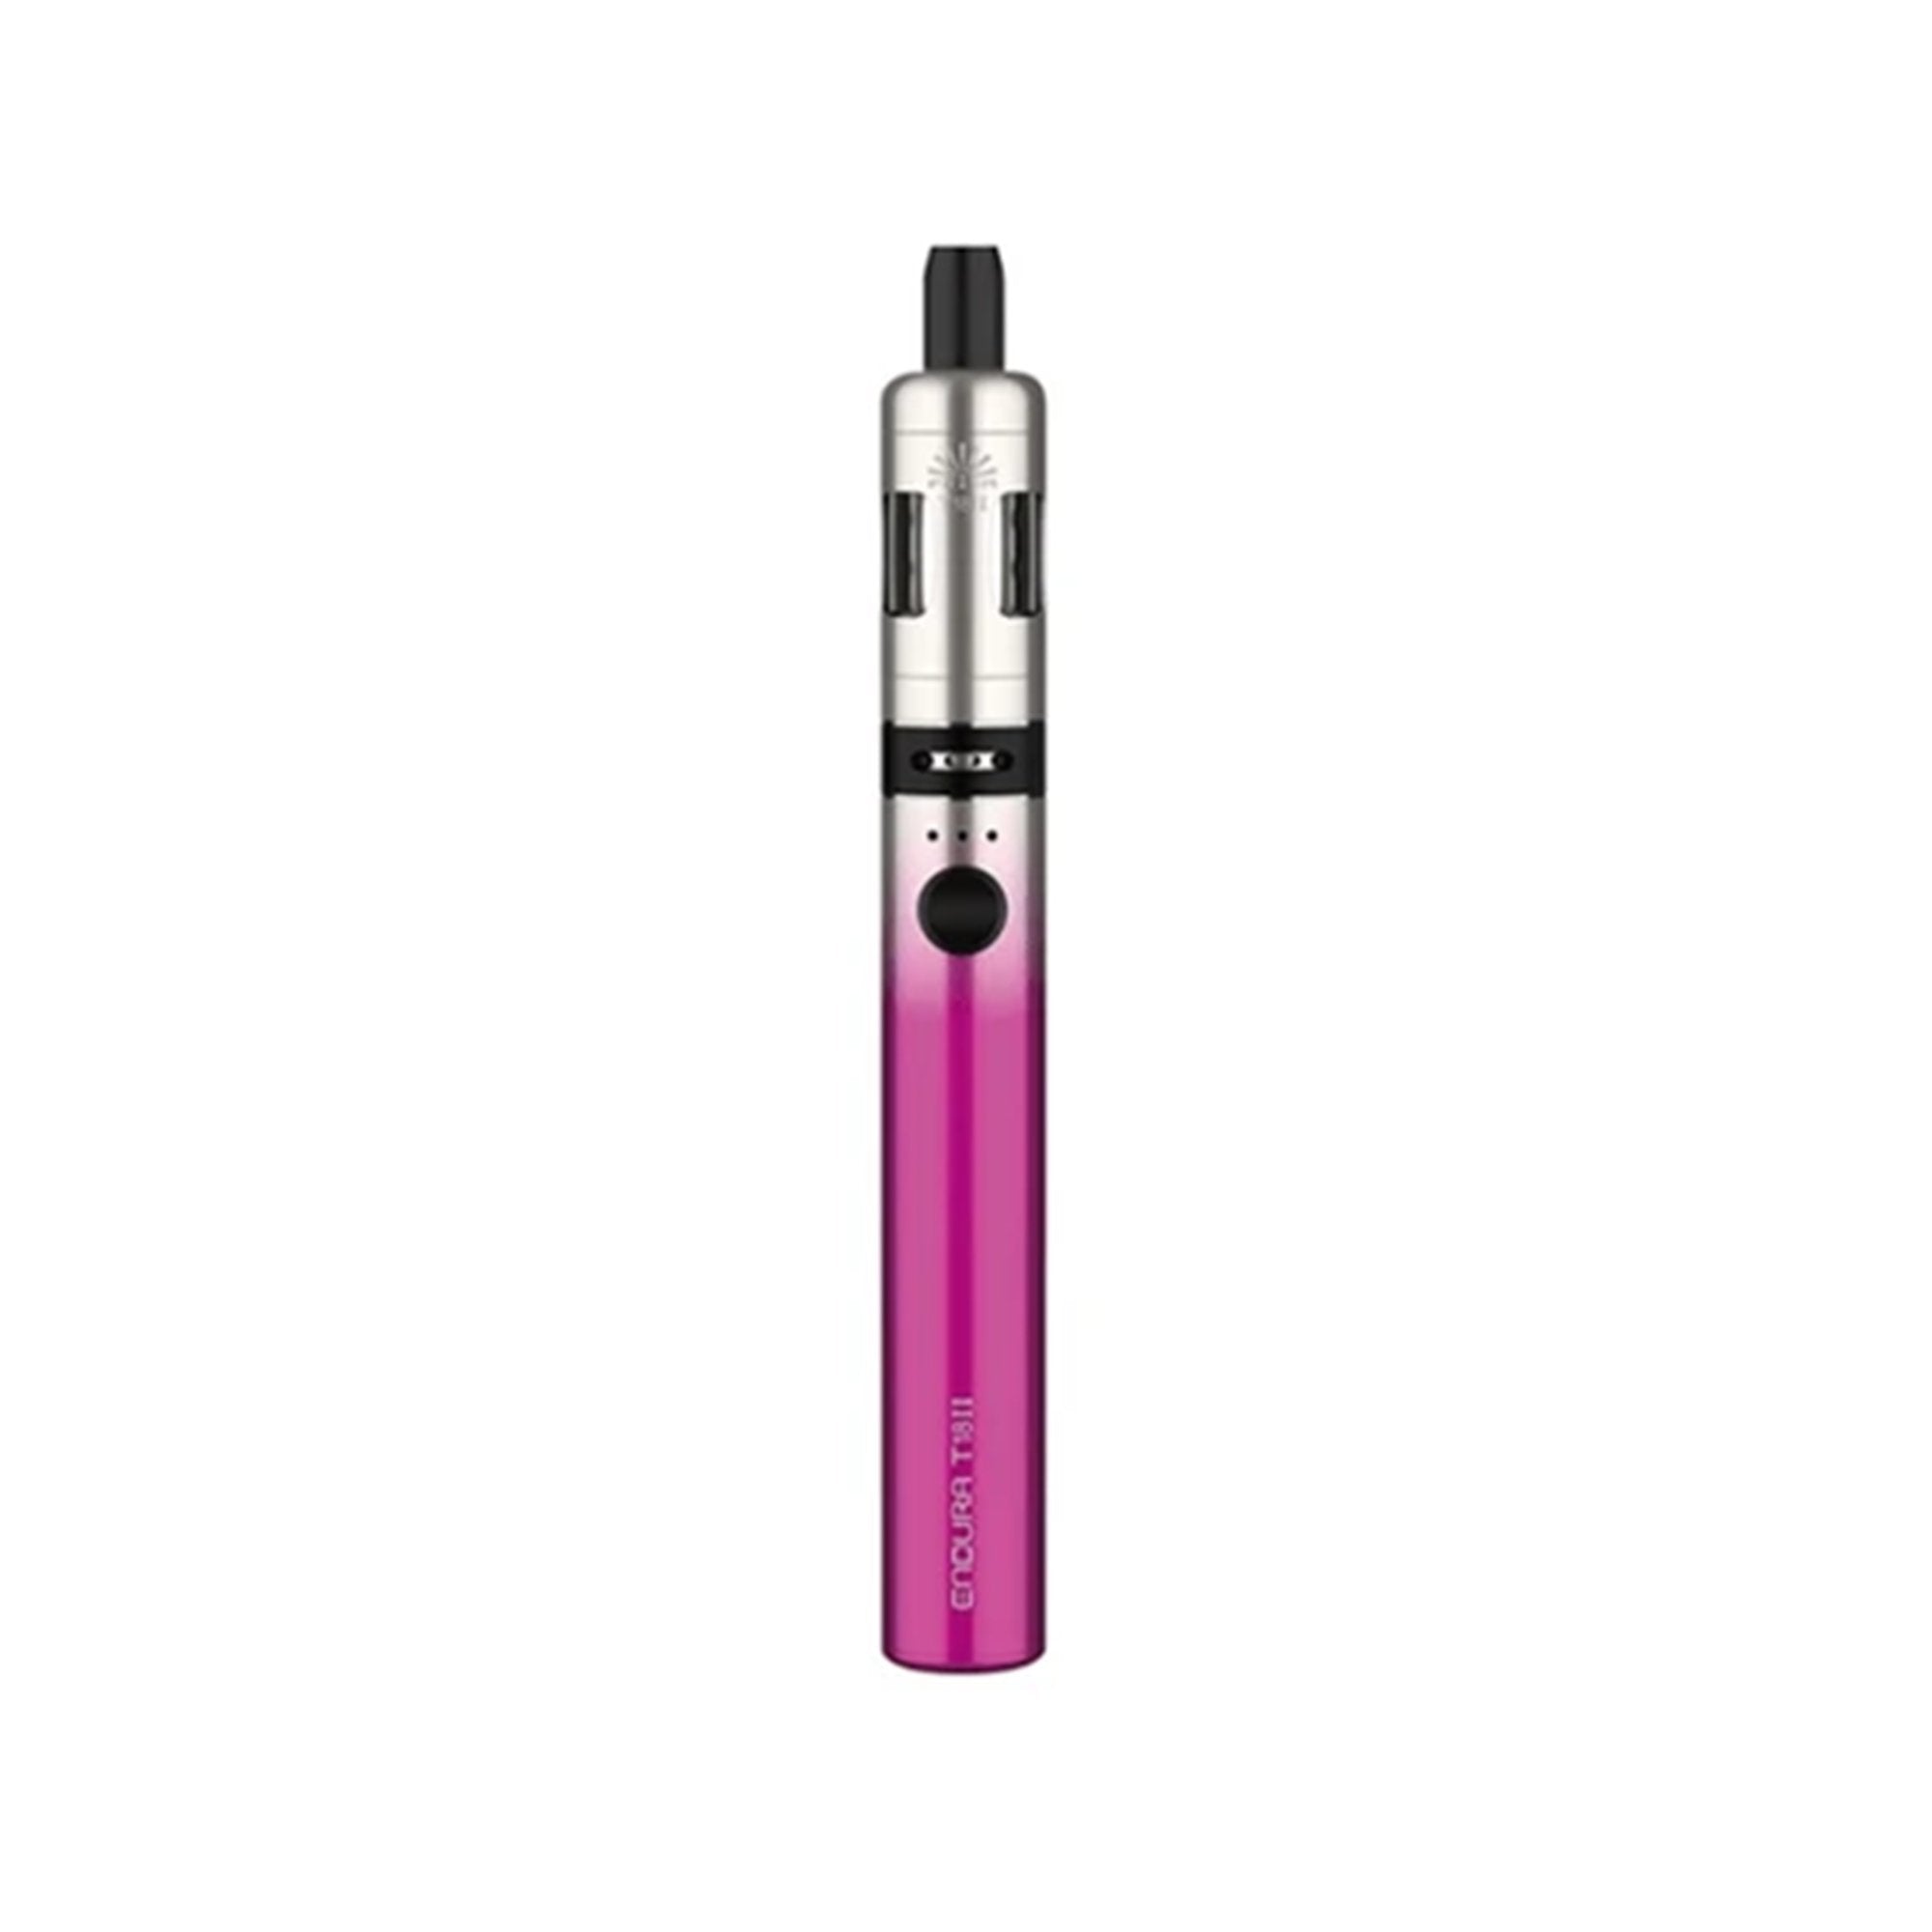 Innokin Endura T18II Vape Pen Kit | 1300mAh | Wolfvapes - Wolfvapes.co.uk-Pink